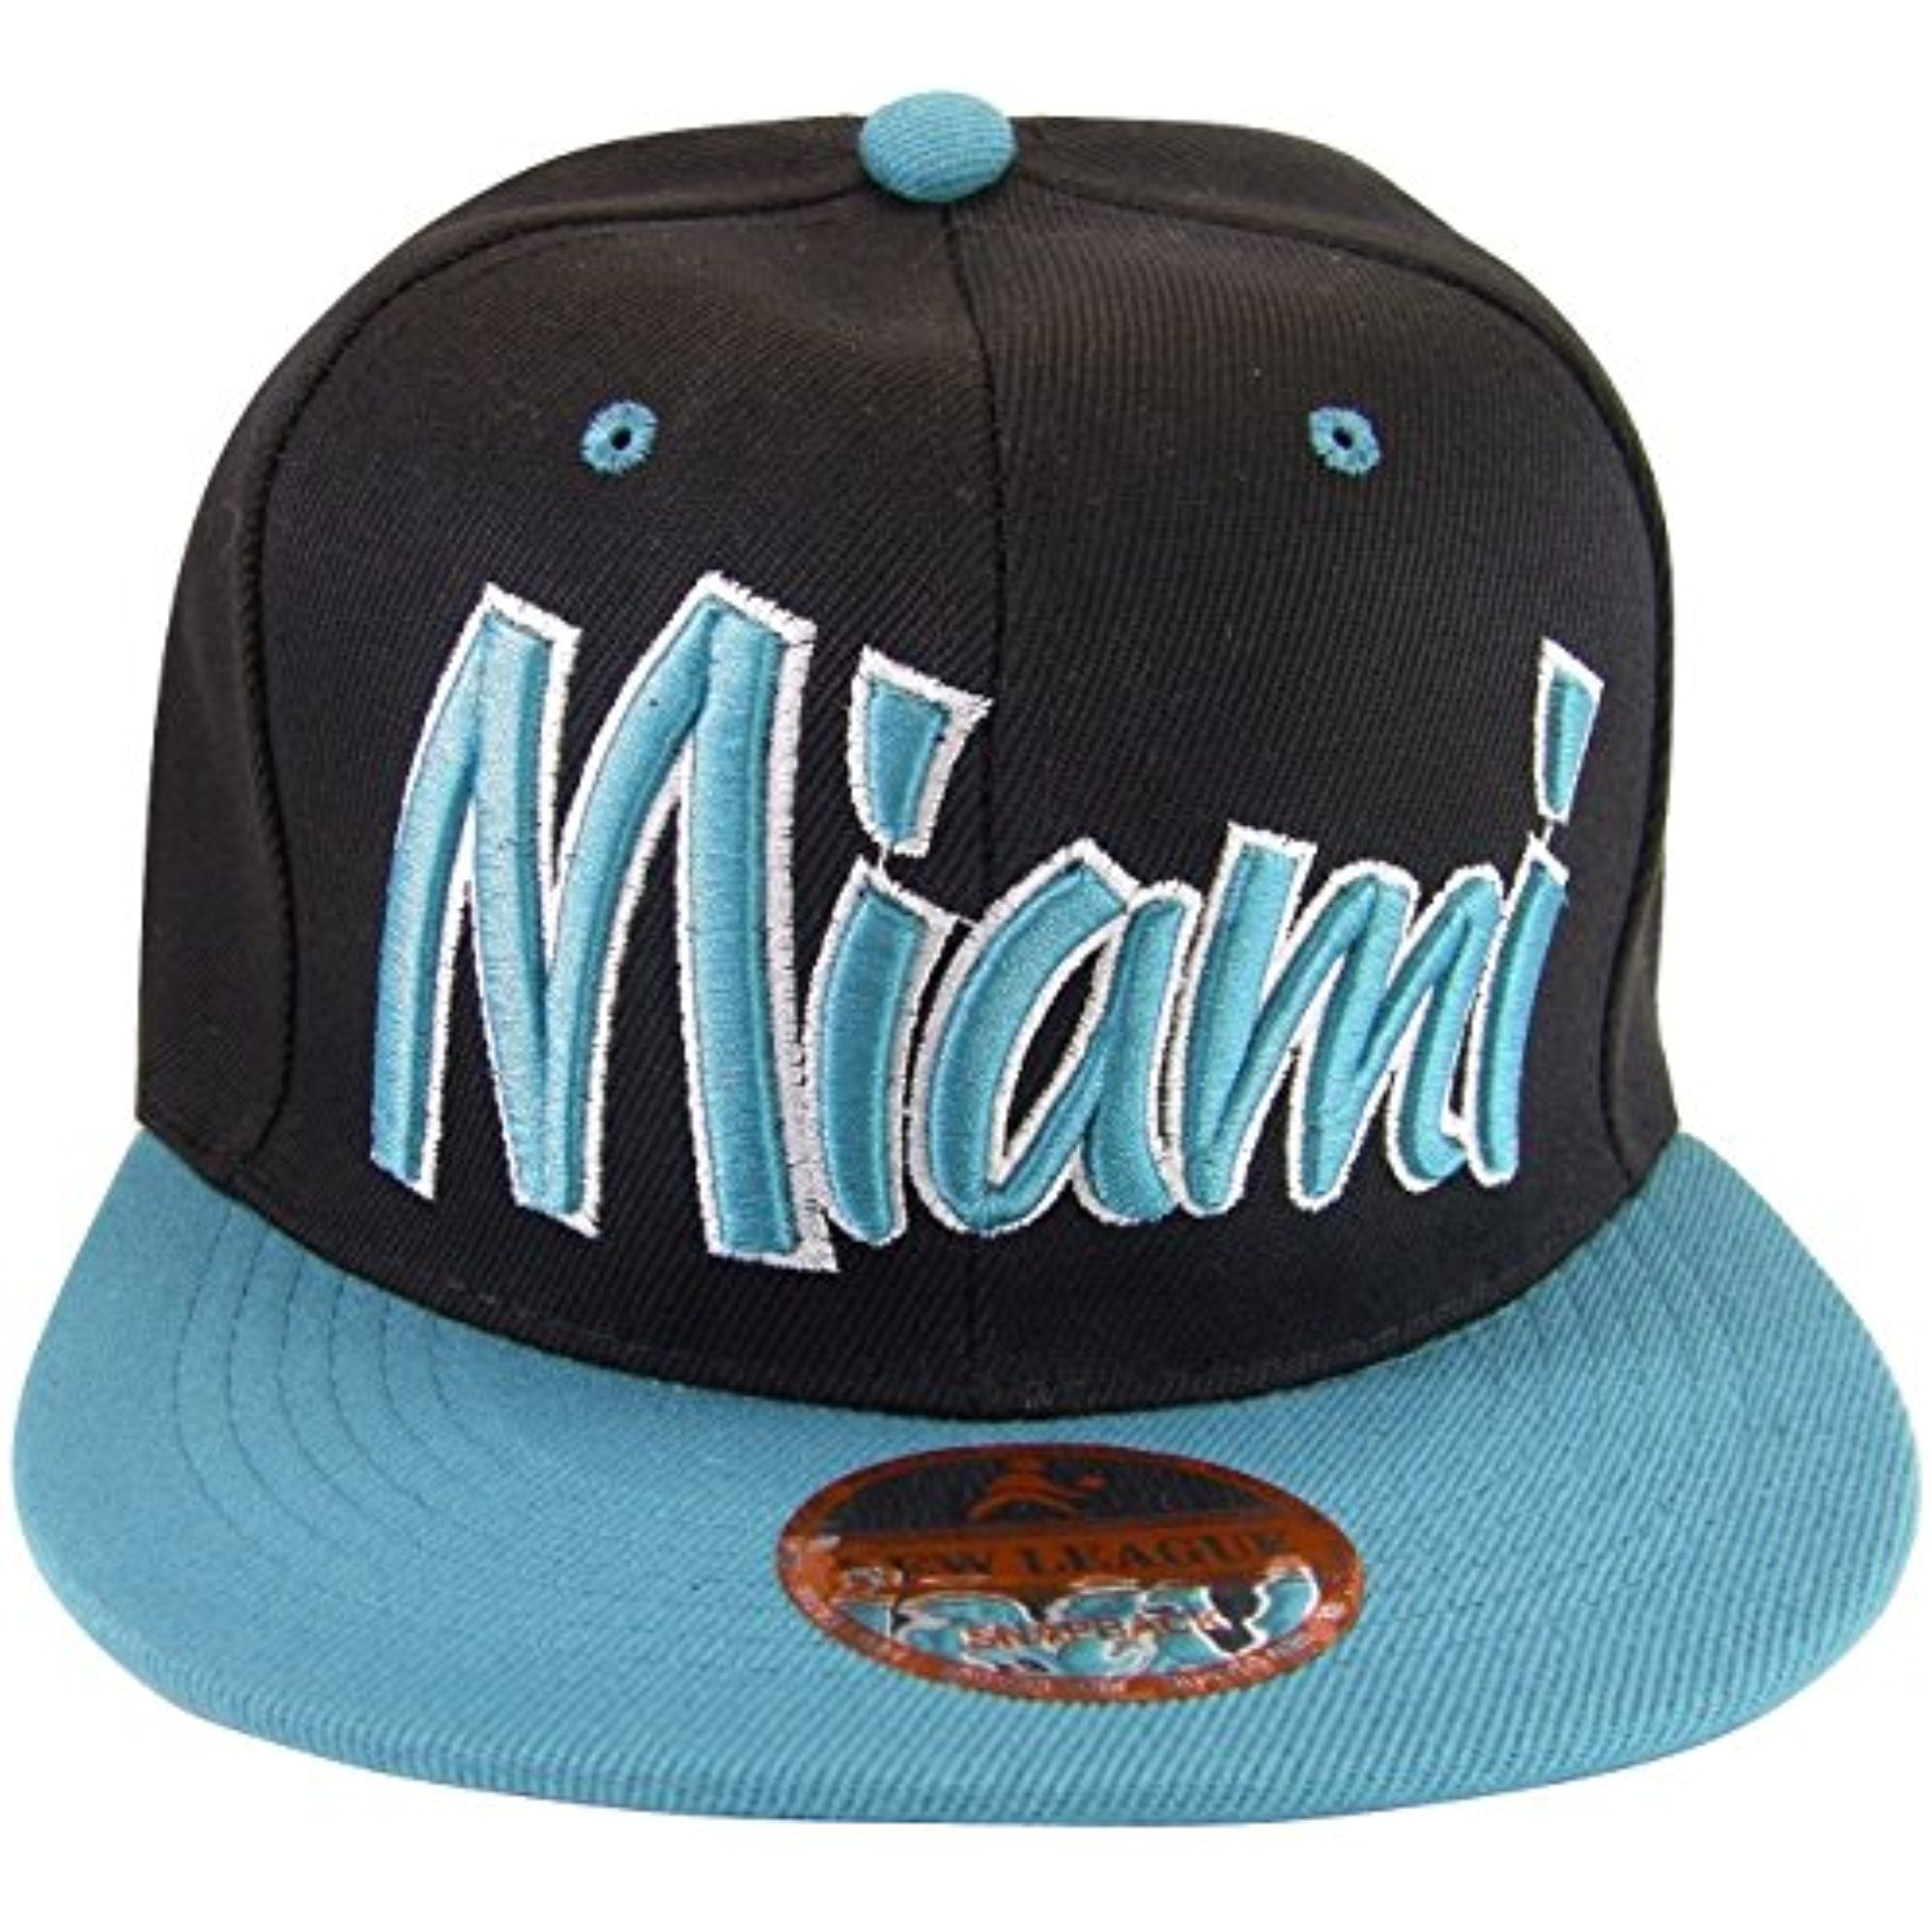 Miami Cursive Script Men's Adjustable Snapback Baseball Caps (Black ...